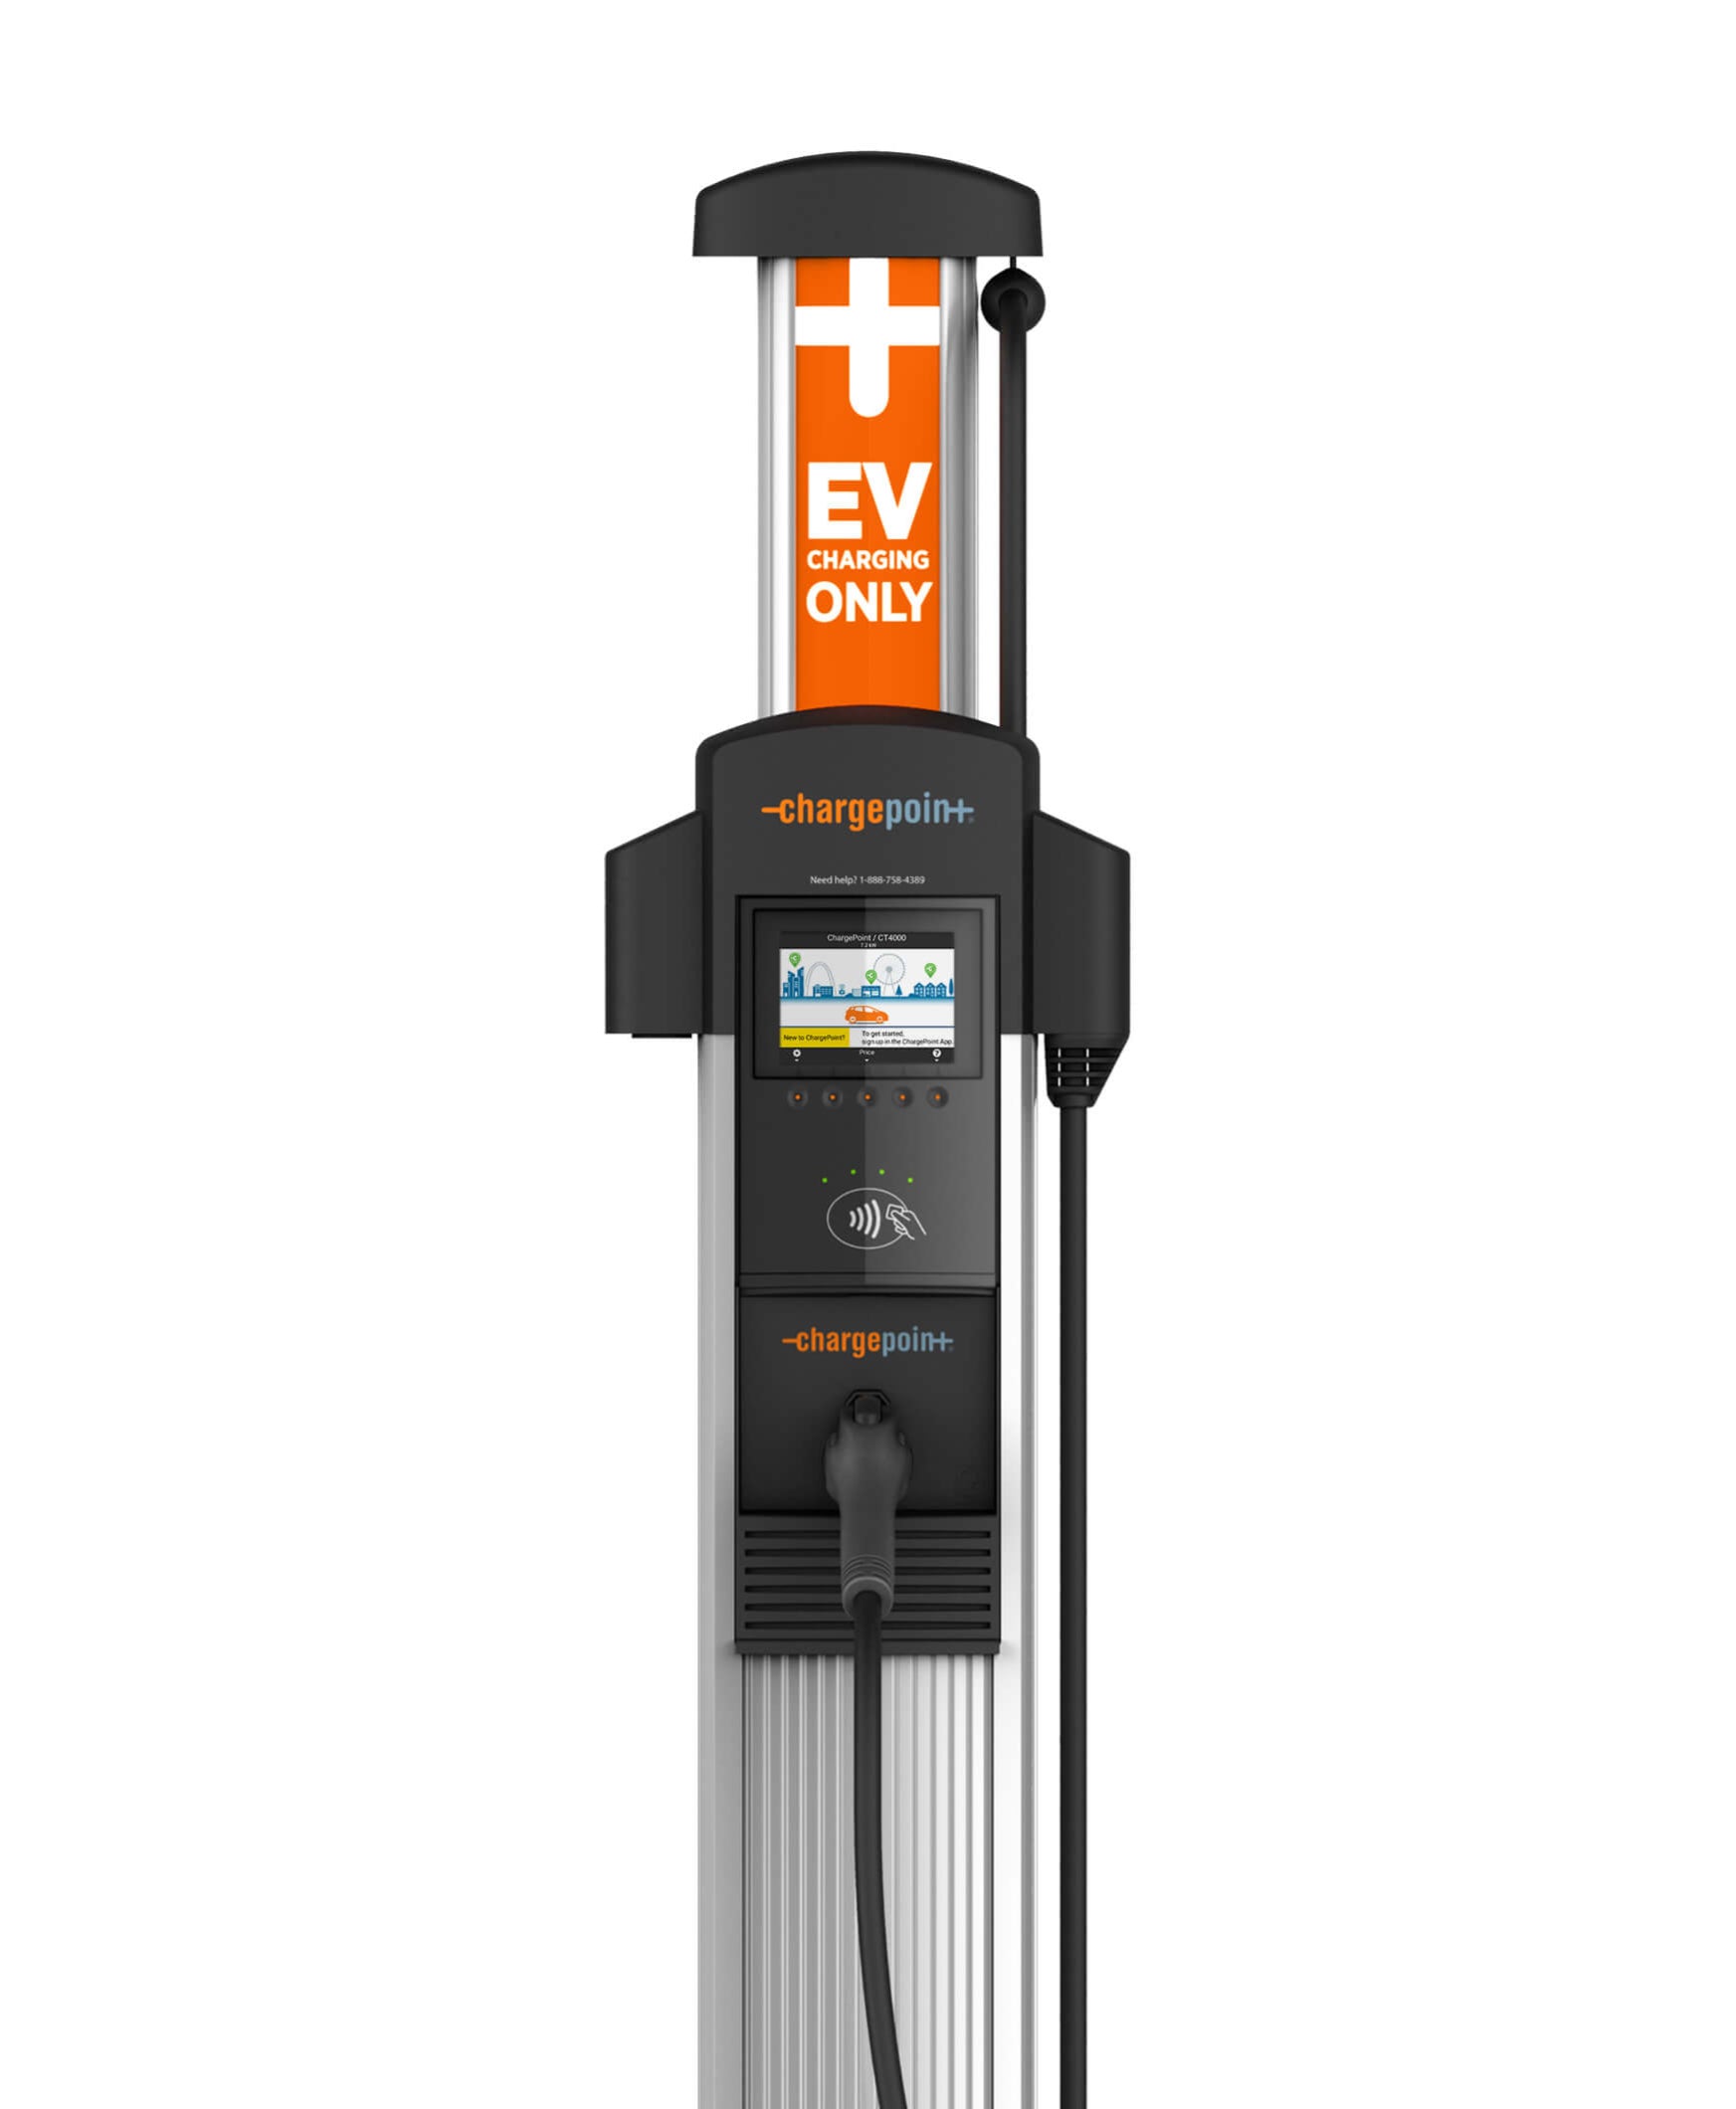 ev charging station